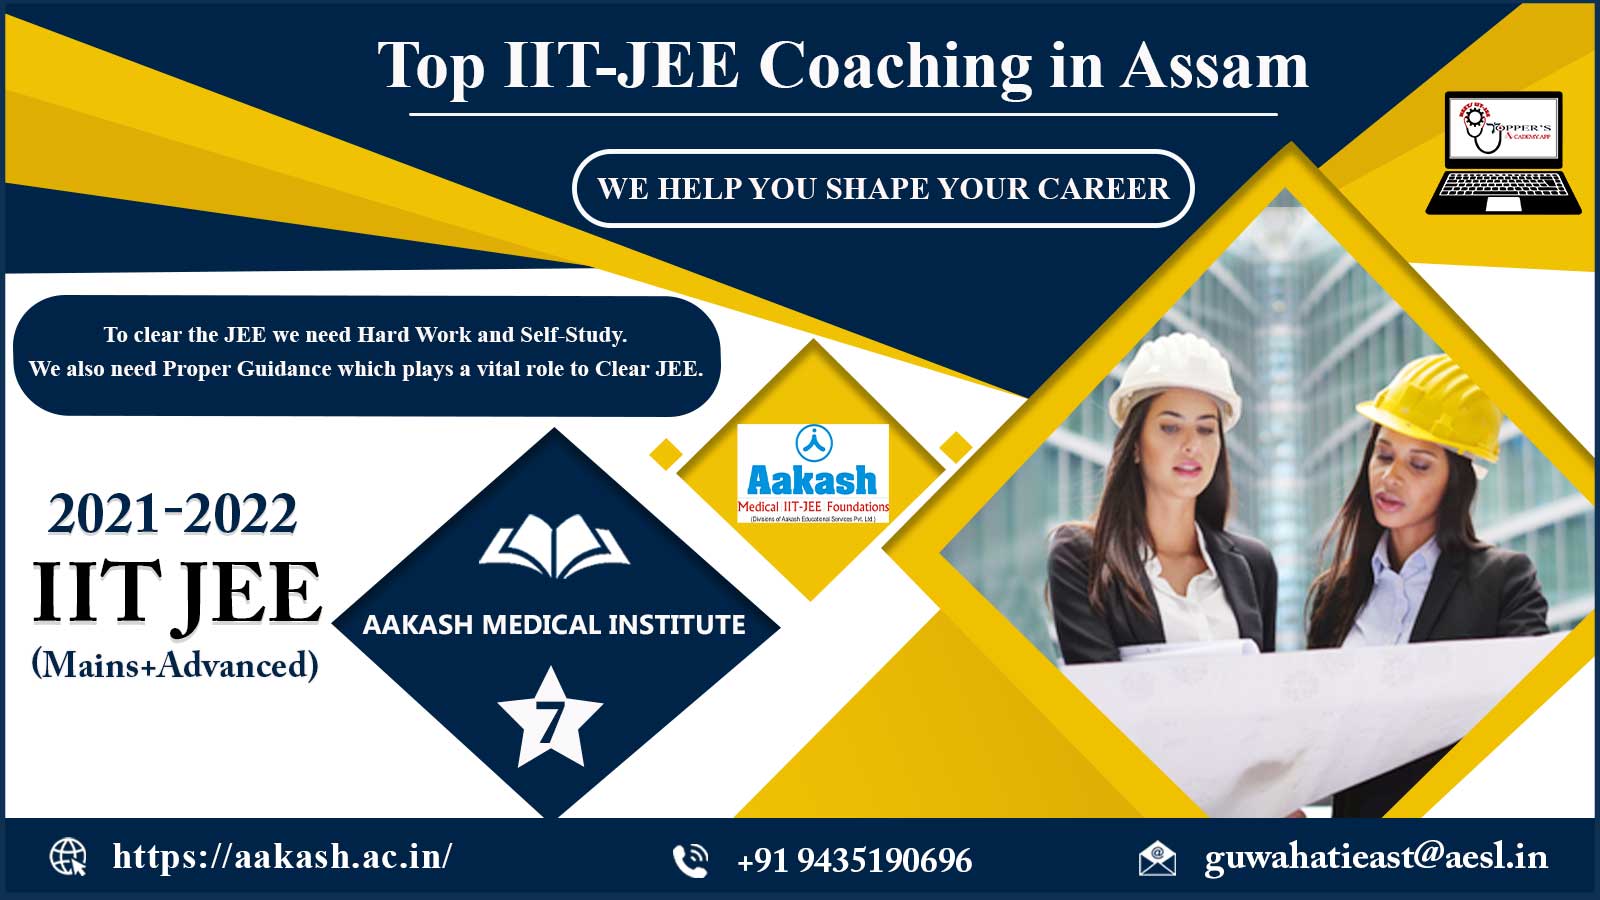 Aakash IIT JEE Coaching in Assam